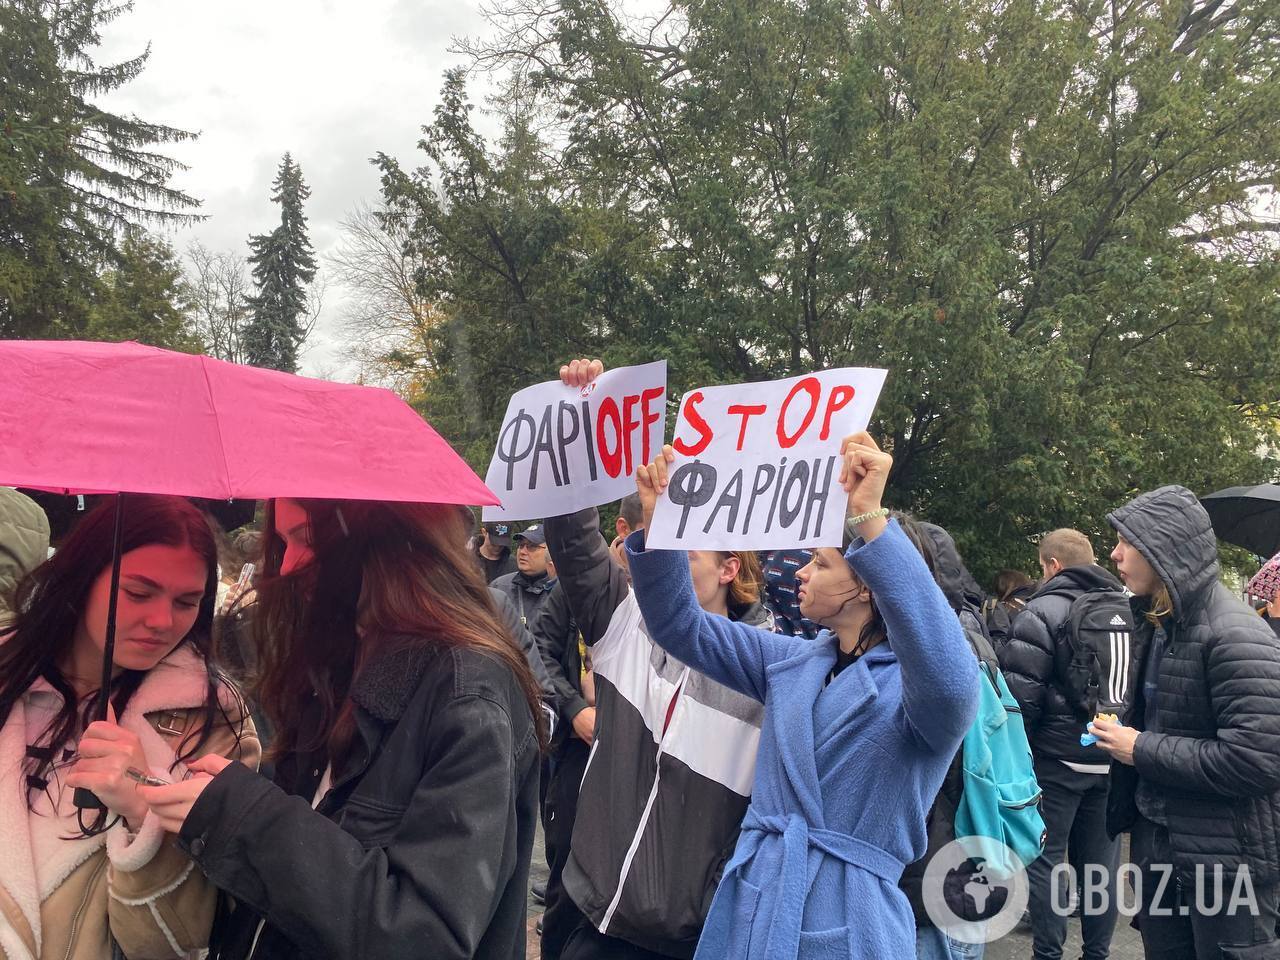 "Позорит Украину": во Львове студенты вышли на митинг с требованием увольнения Фарион. Что известно о скандалах с ее участием